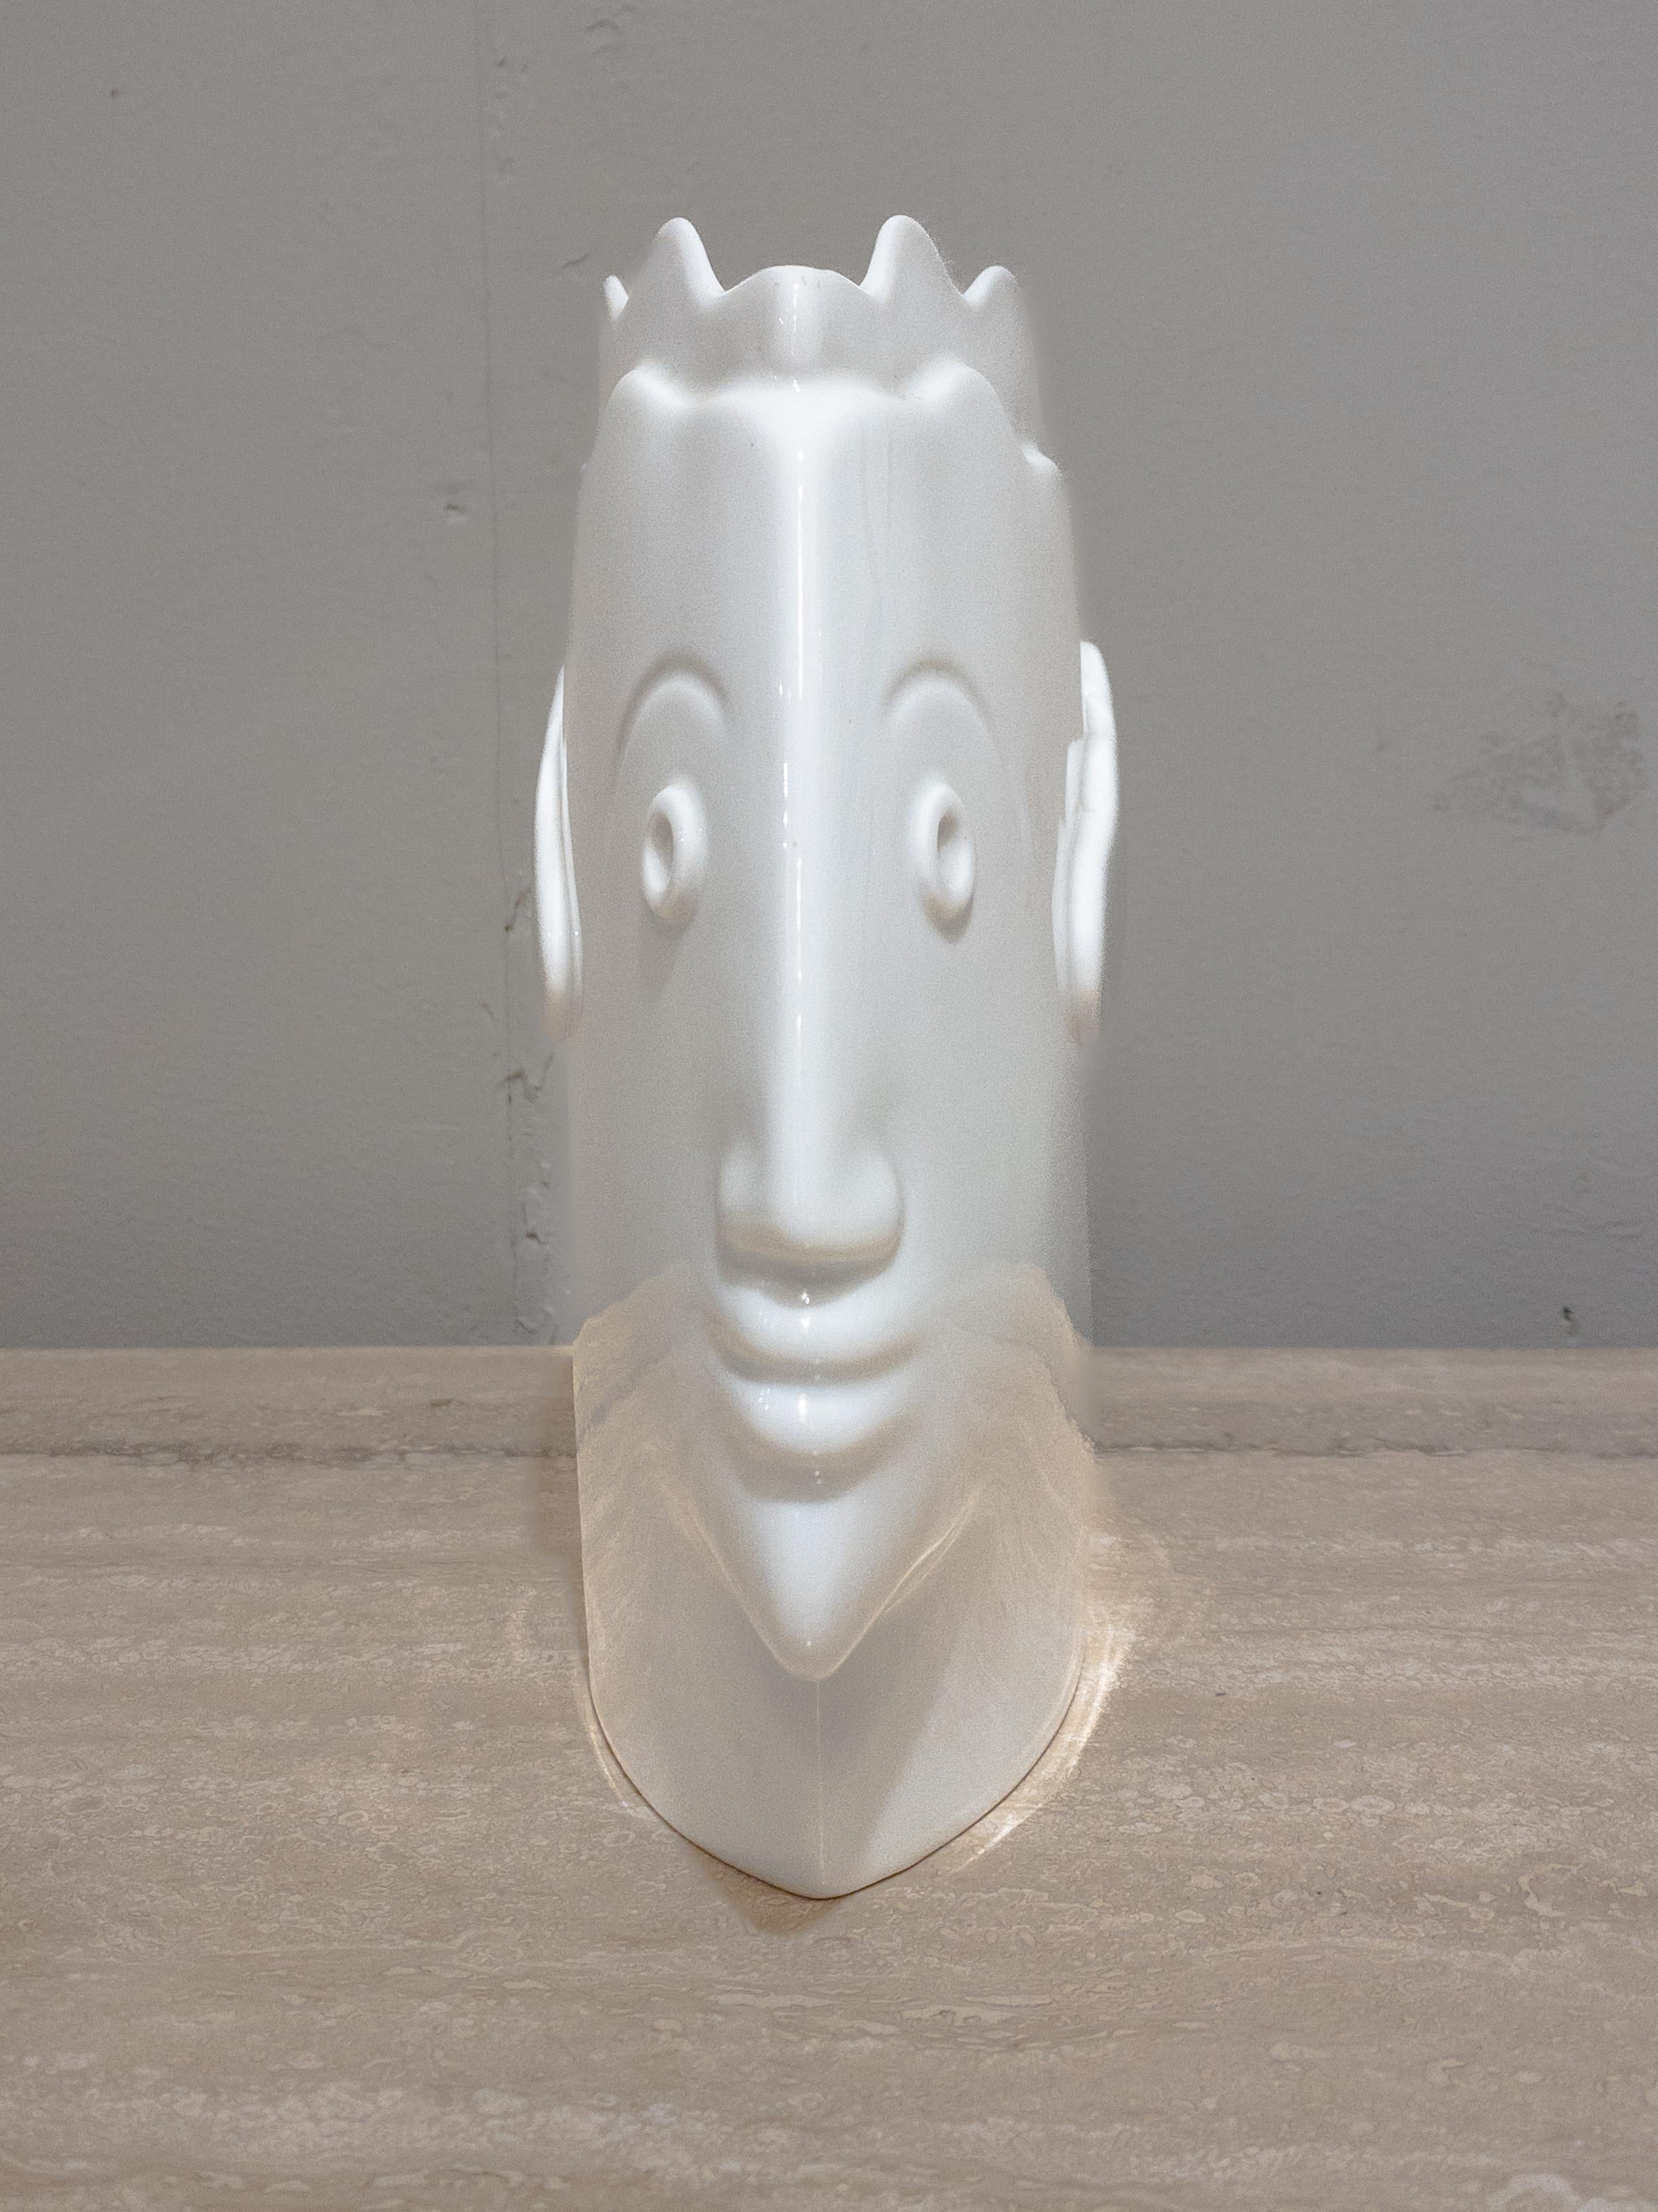 Vase en céramique post-moderne des années 1980 de la célèbre artiste autrichienne Heide Warlamis (née en 1942), provenant de sa célèbre Collection Sienne. Signé sur le fond avec la marque du fabricant.